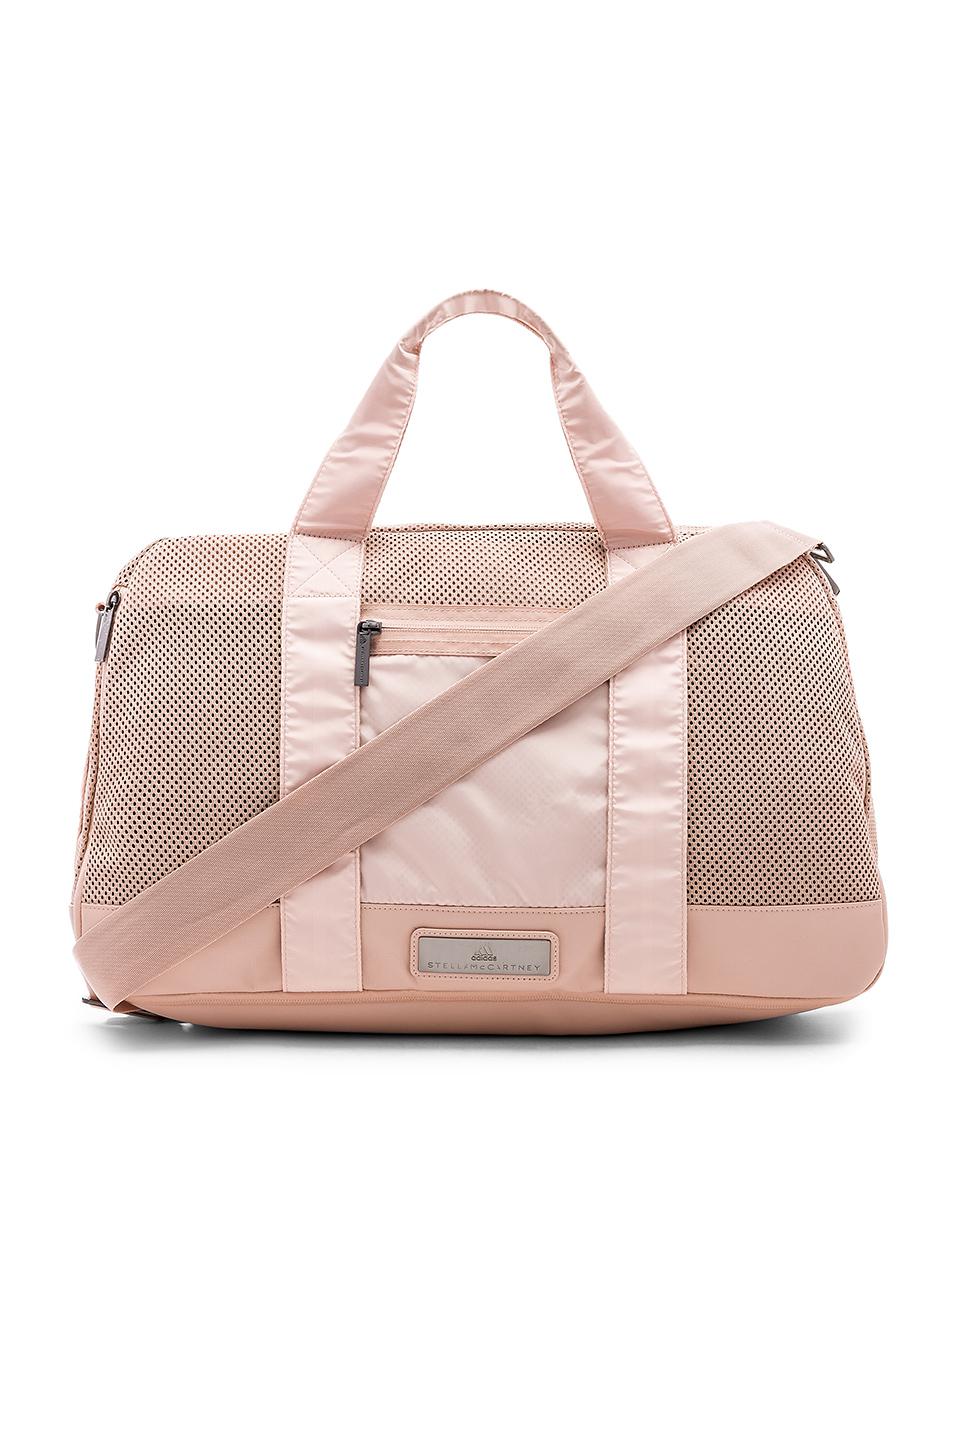 adidas By Stella McCartney Yoga Bag in Pearl Rose (Pink) - Lyst